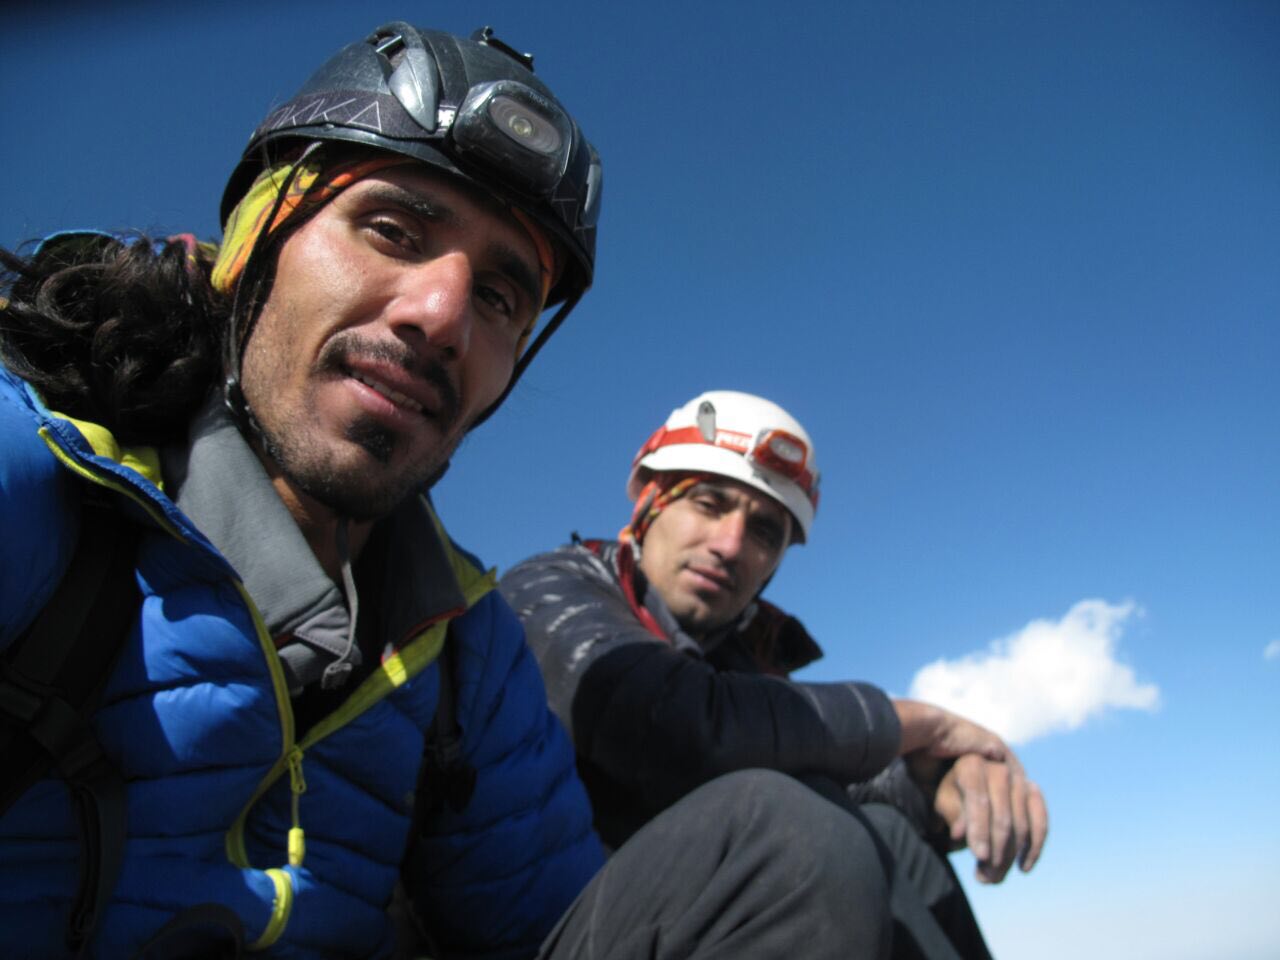 صعود قله علم کوه از مسیر هاری رست نوسط کامران علیزاده و حسین احمدی